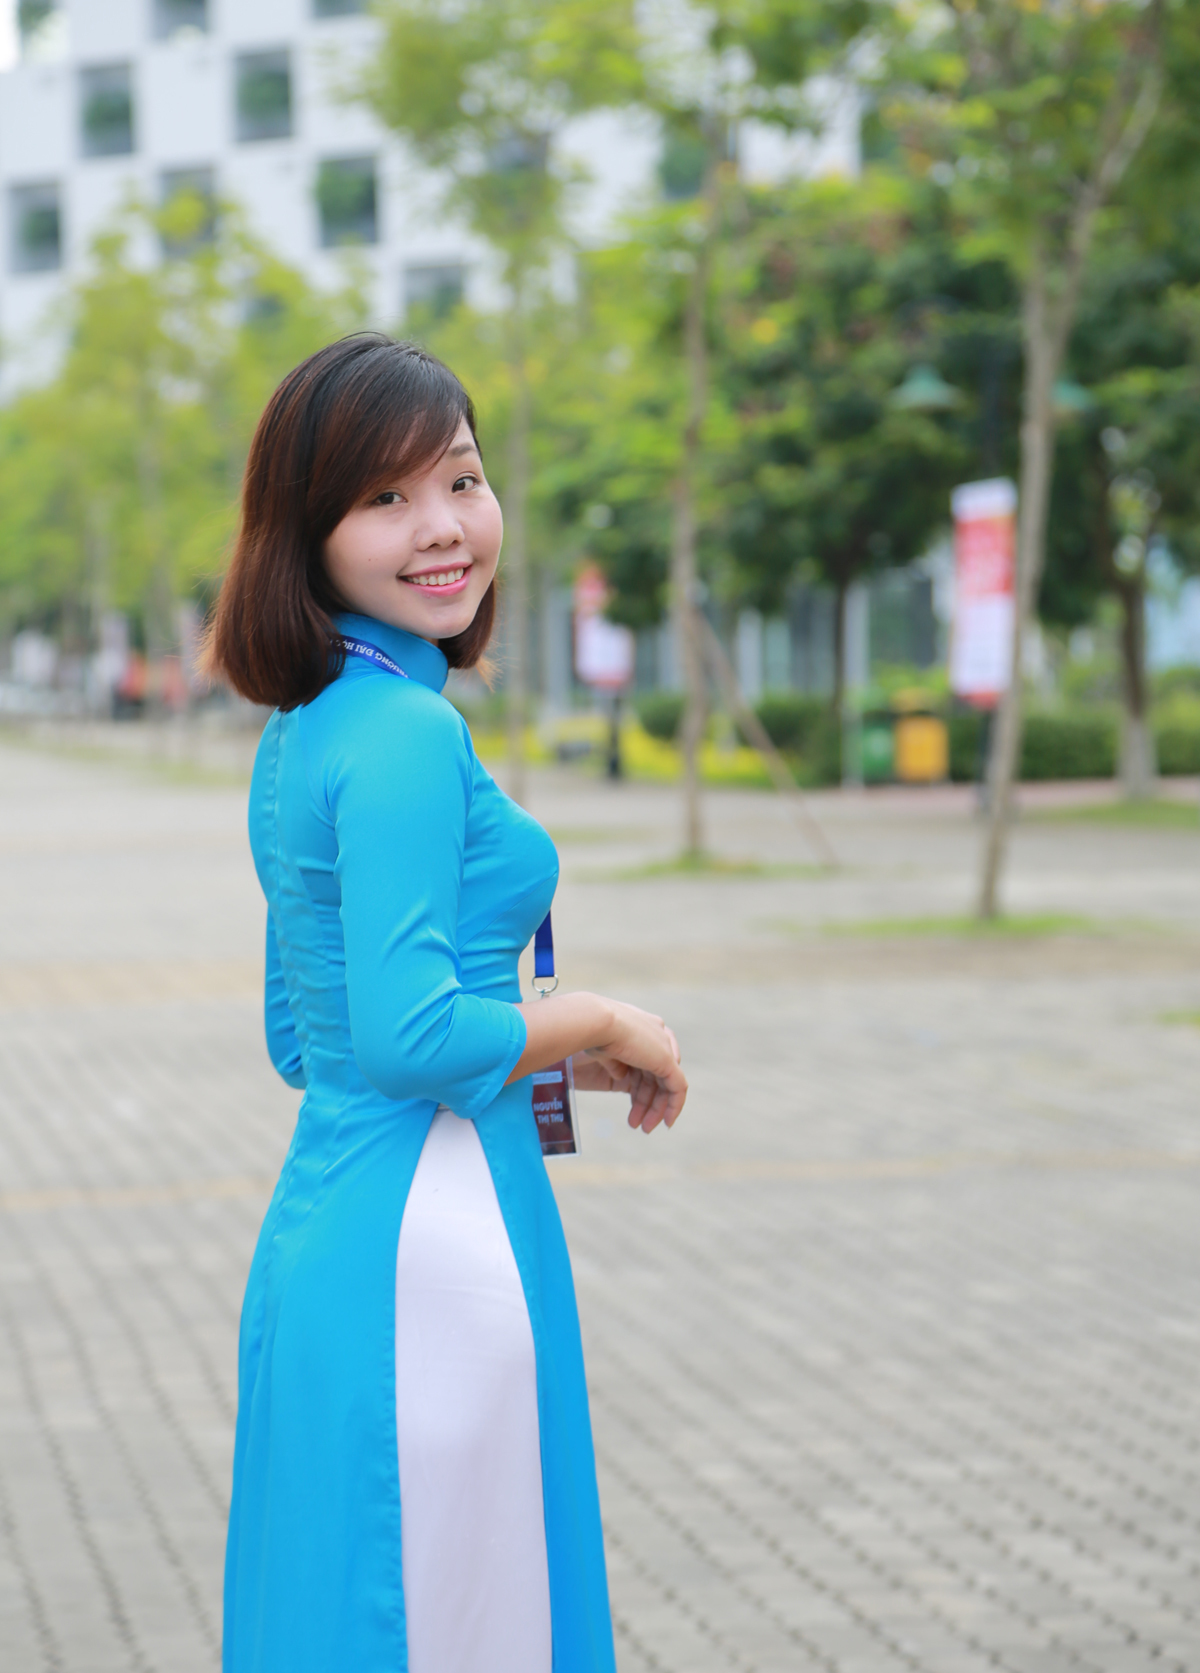 <p> Nguyễn Thị Thu gắn bó với ĐH FPT được 4 năm, và chị có nhiều cảm xúc trong dịp 10 năm trường thành lập. </p>